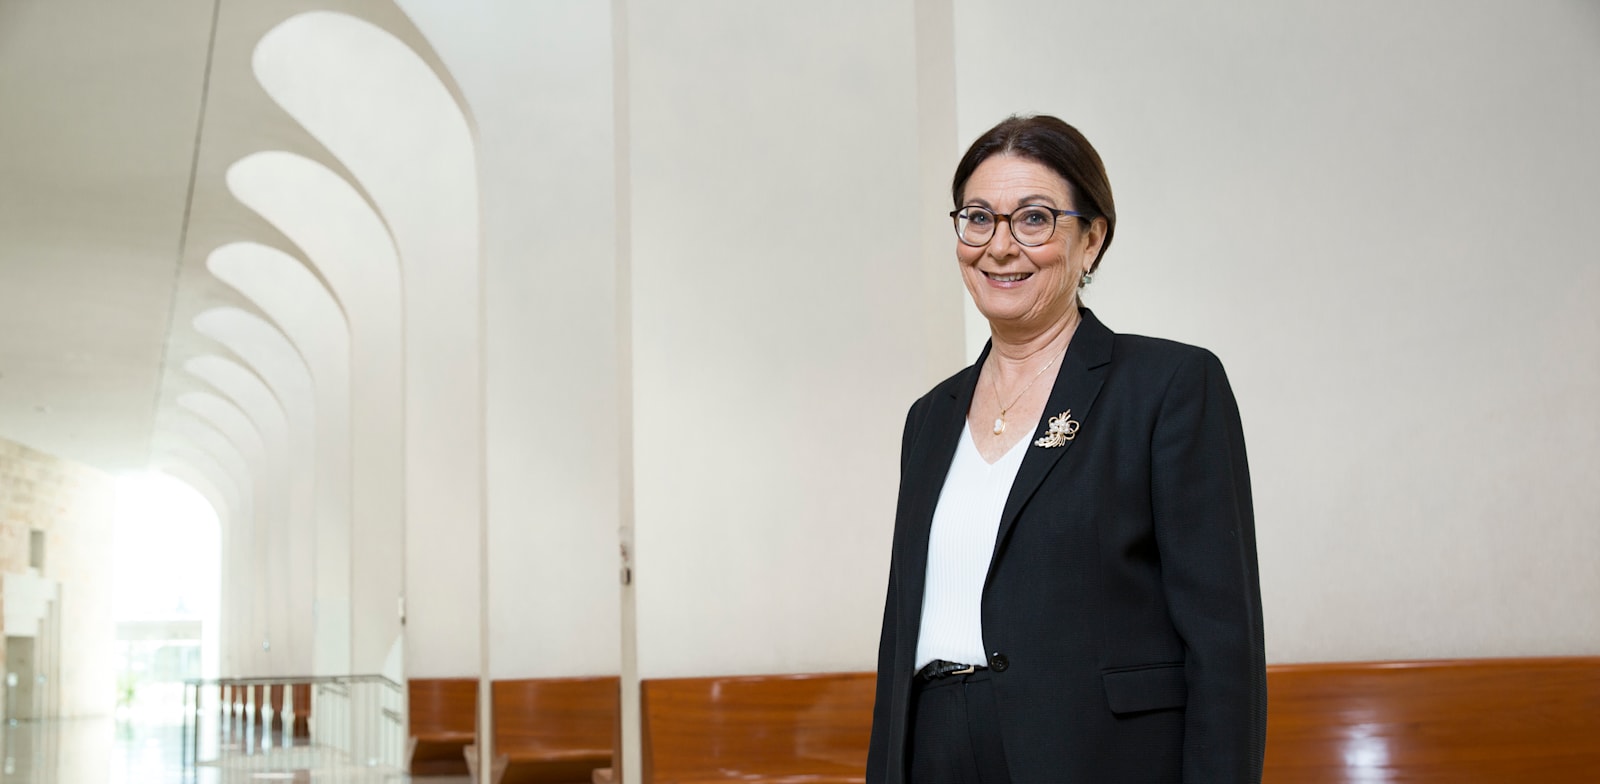 אסתר חיות, נשיאת בית משפט עליון / צילום: ענבל מרמרי